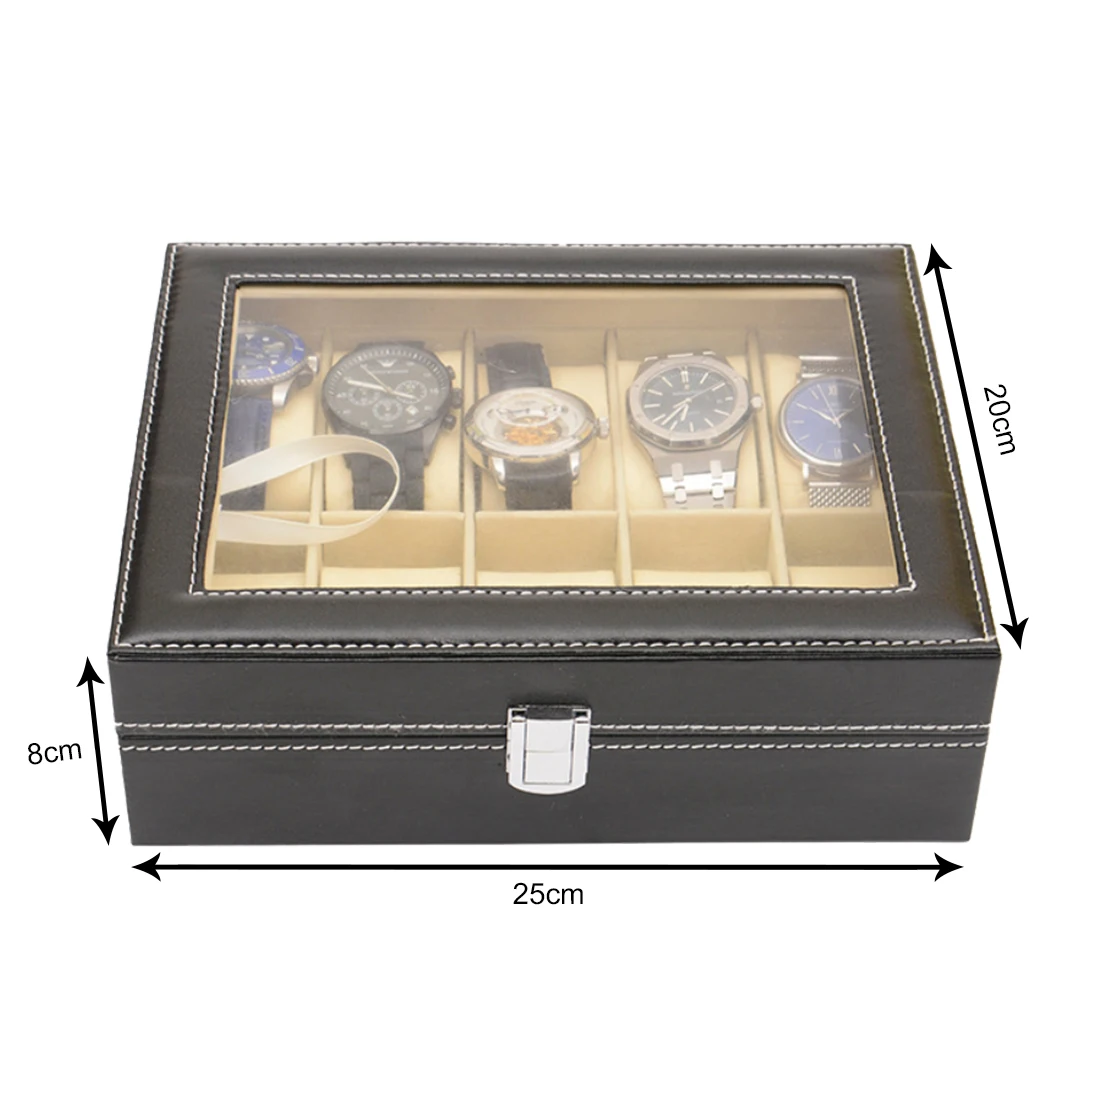 Часы Дисплей многофункциональная коробка часы коробка держатель чехол для дорогие украшения часы хранения наручные часы коробка